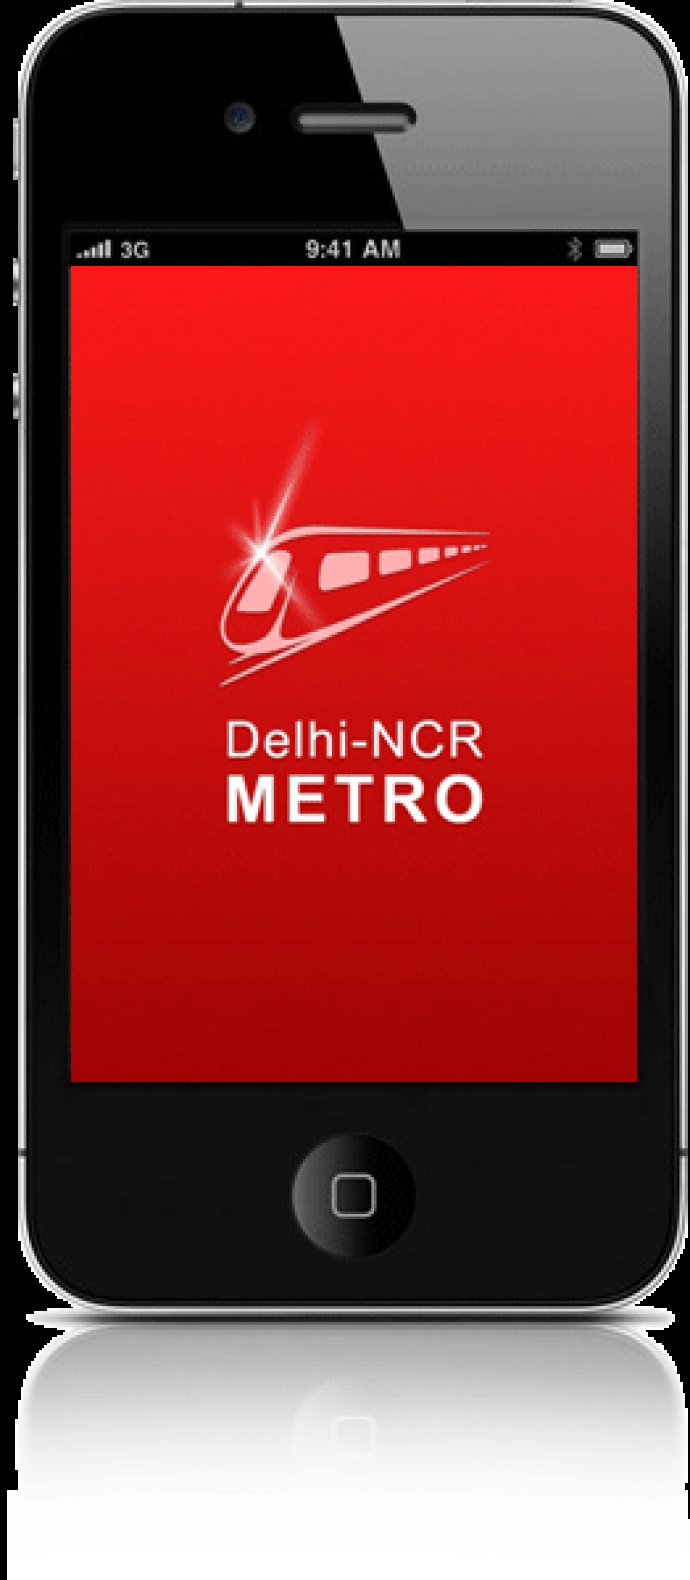 Delhi NCR Metro